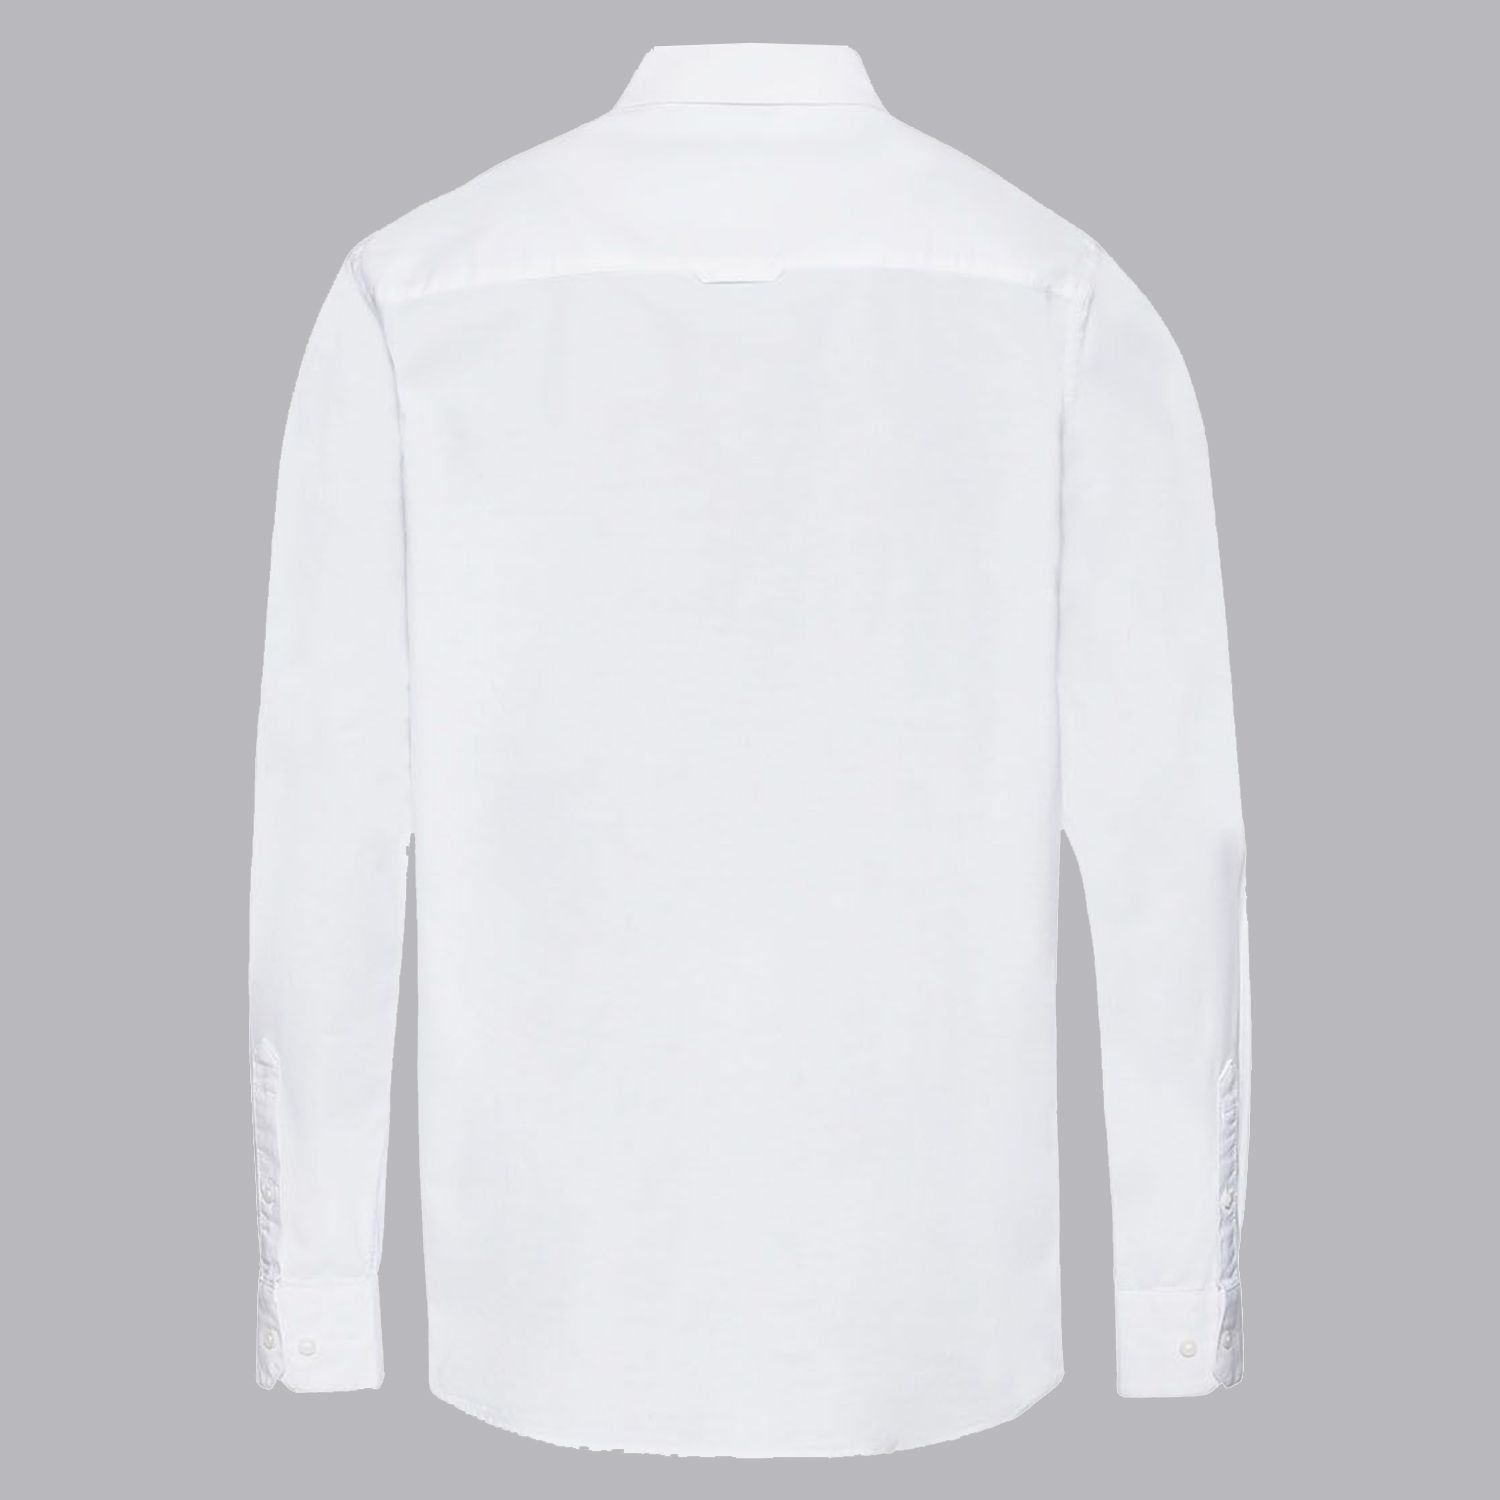 پیراهن آستین بلند مردانه لیورجی مدل استایل کد UP-Modern2022 رنگ سفید -  - 3